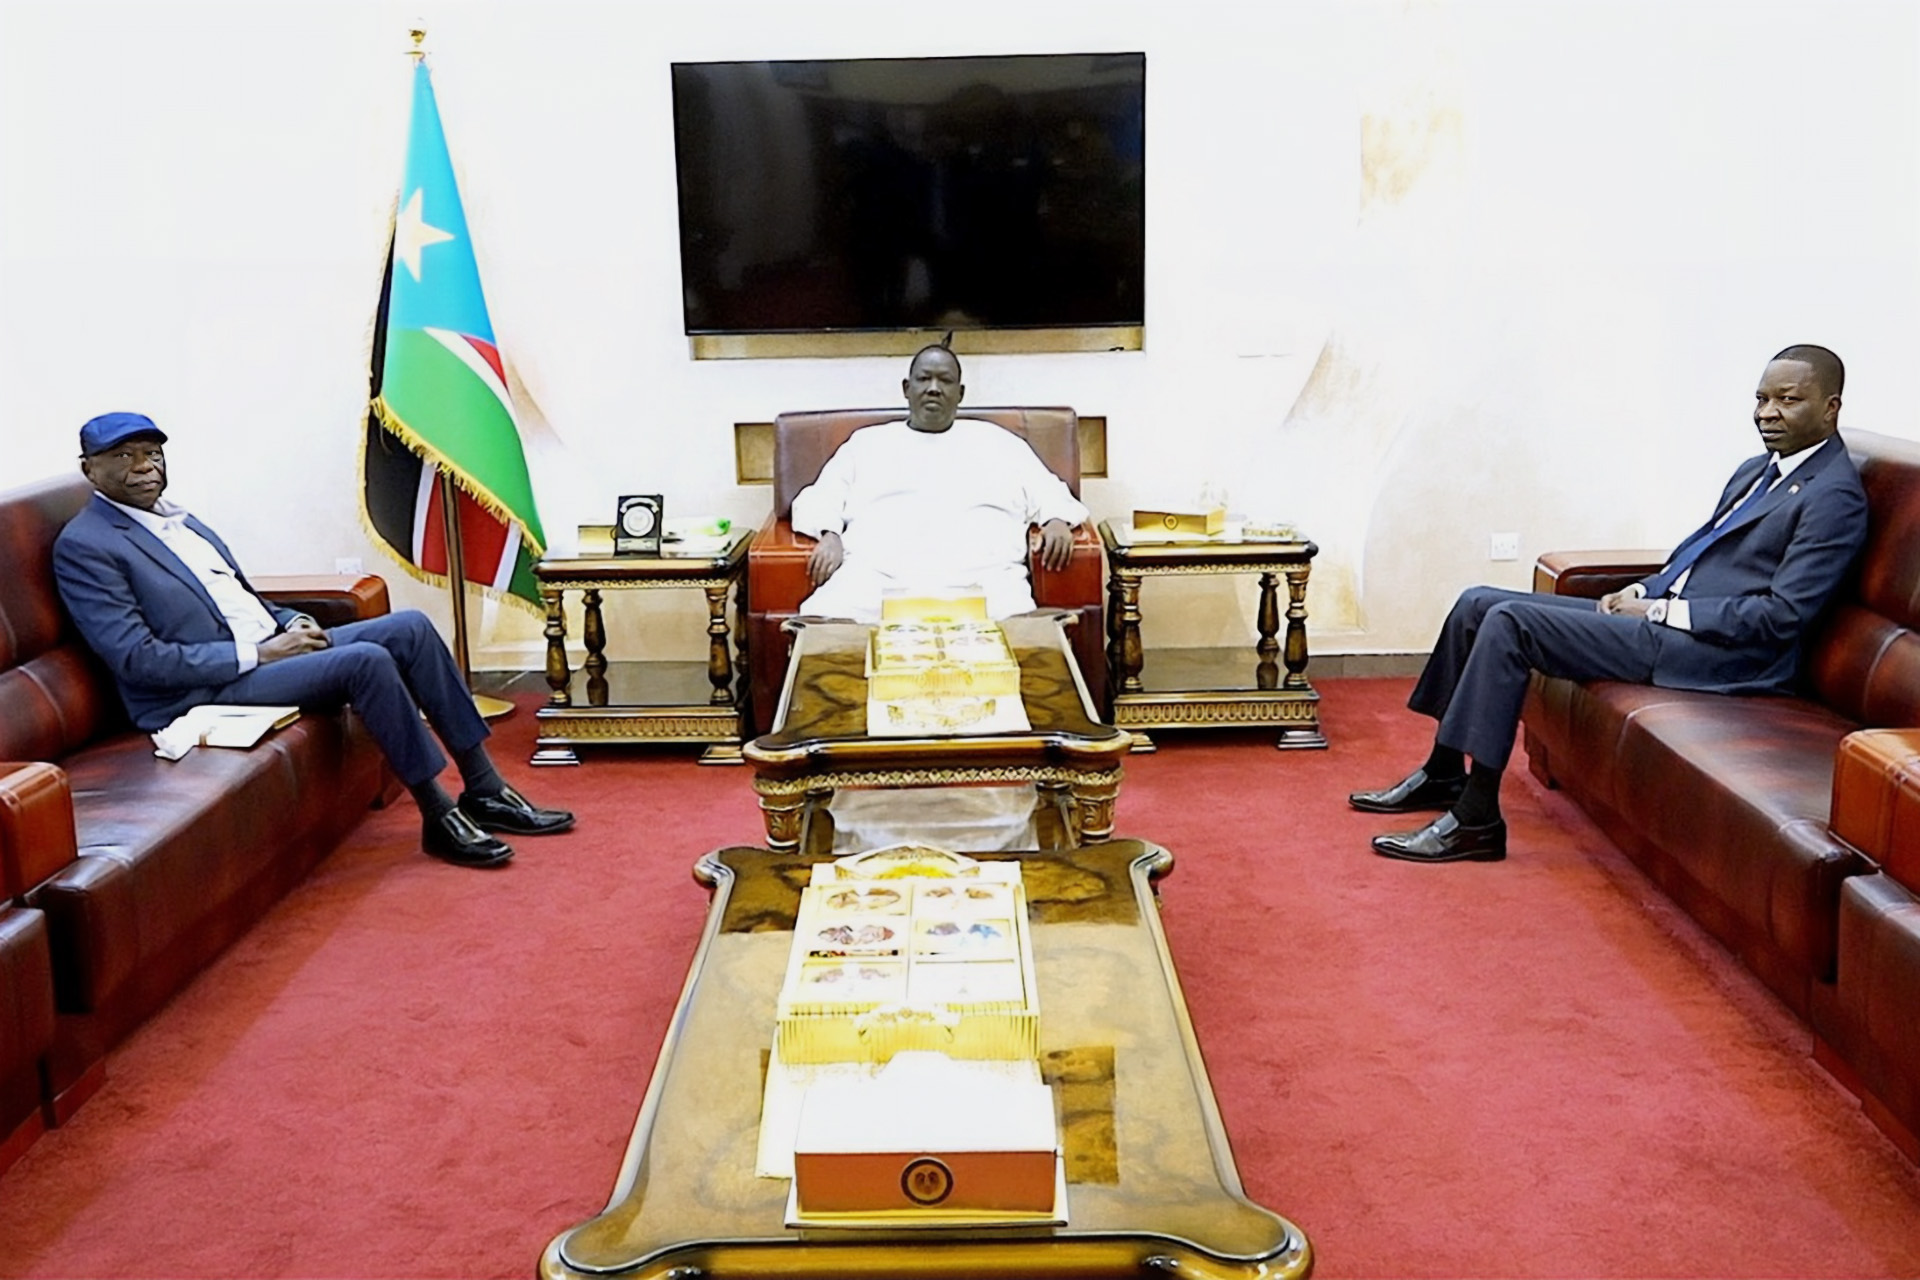 هل يتطور اتفاق “جنوب كردفان” الإنساني في السودان إلى تسوية سياسية؟ | سياسة – البوكس نيوز